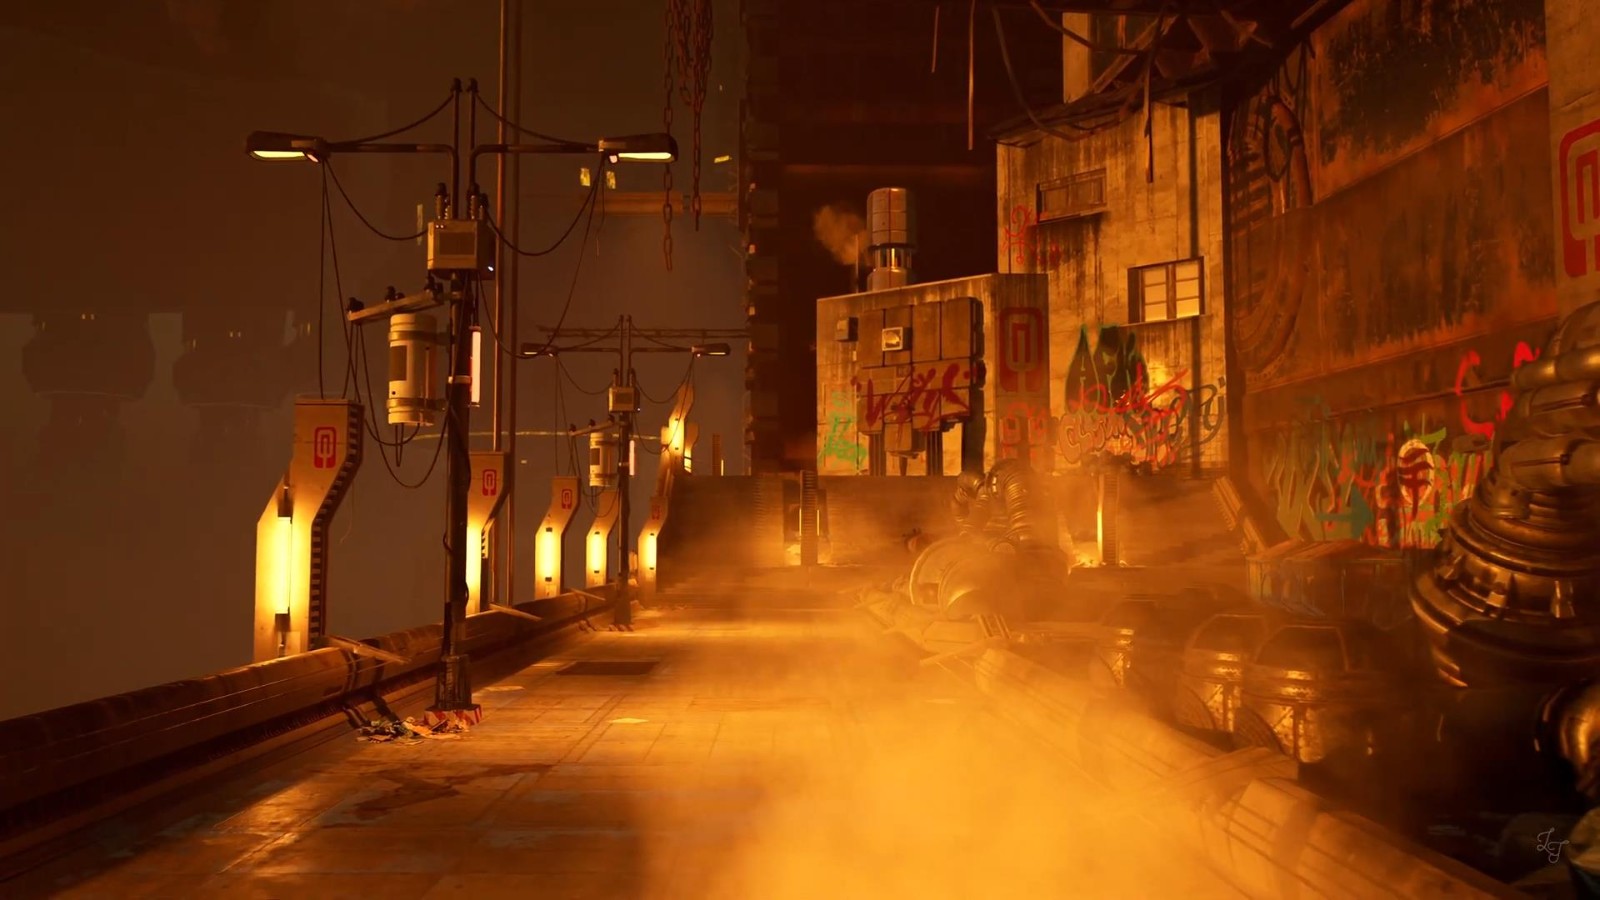 虚幻5引擎重制《质量效应3》奥米茄场景 效果惊人